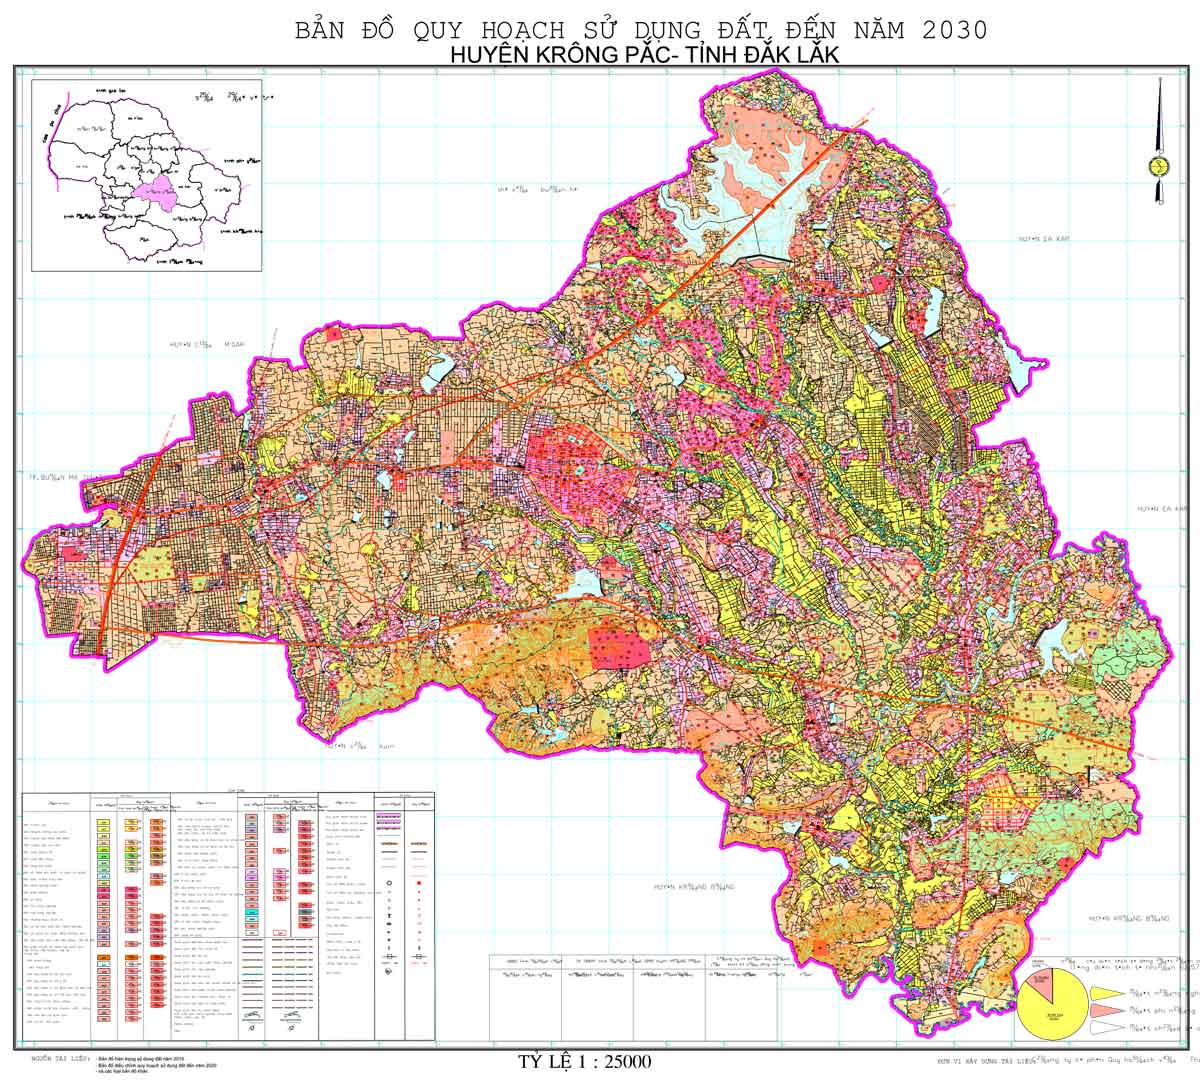 Bản đồ QHSDĐ huyện Krông Pắc đến năm 2030